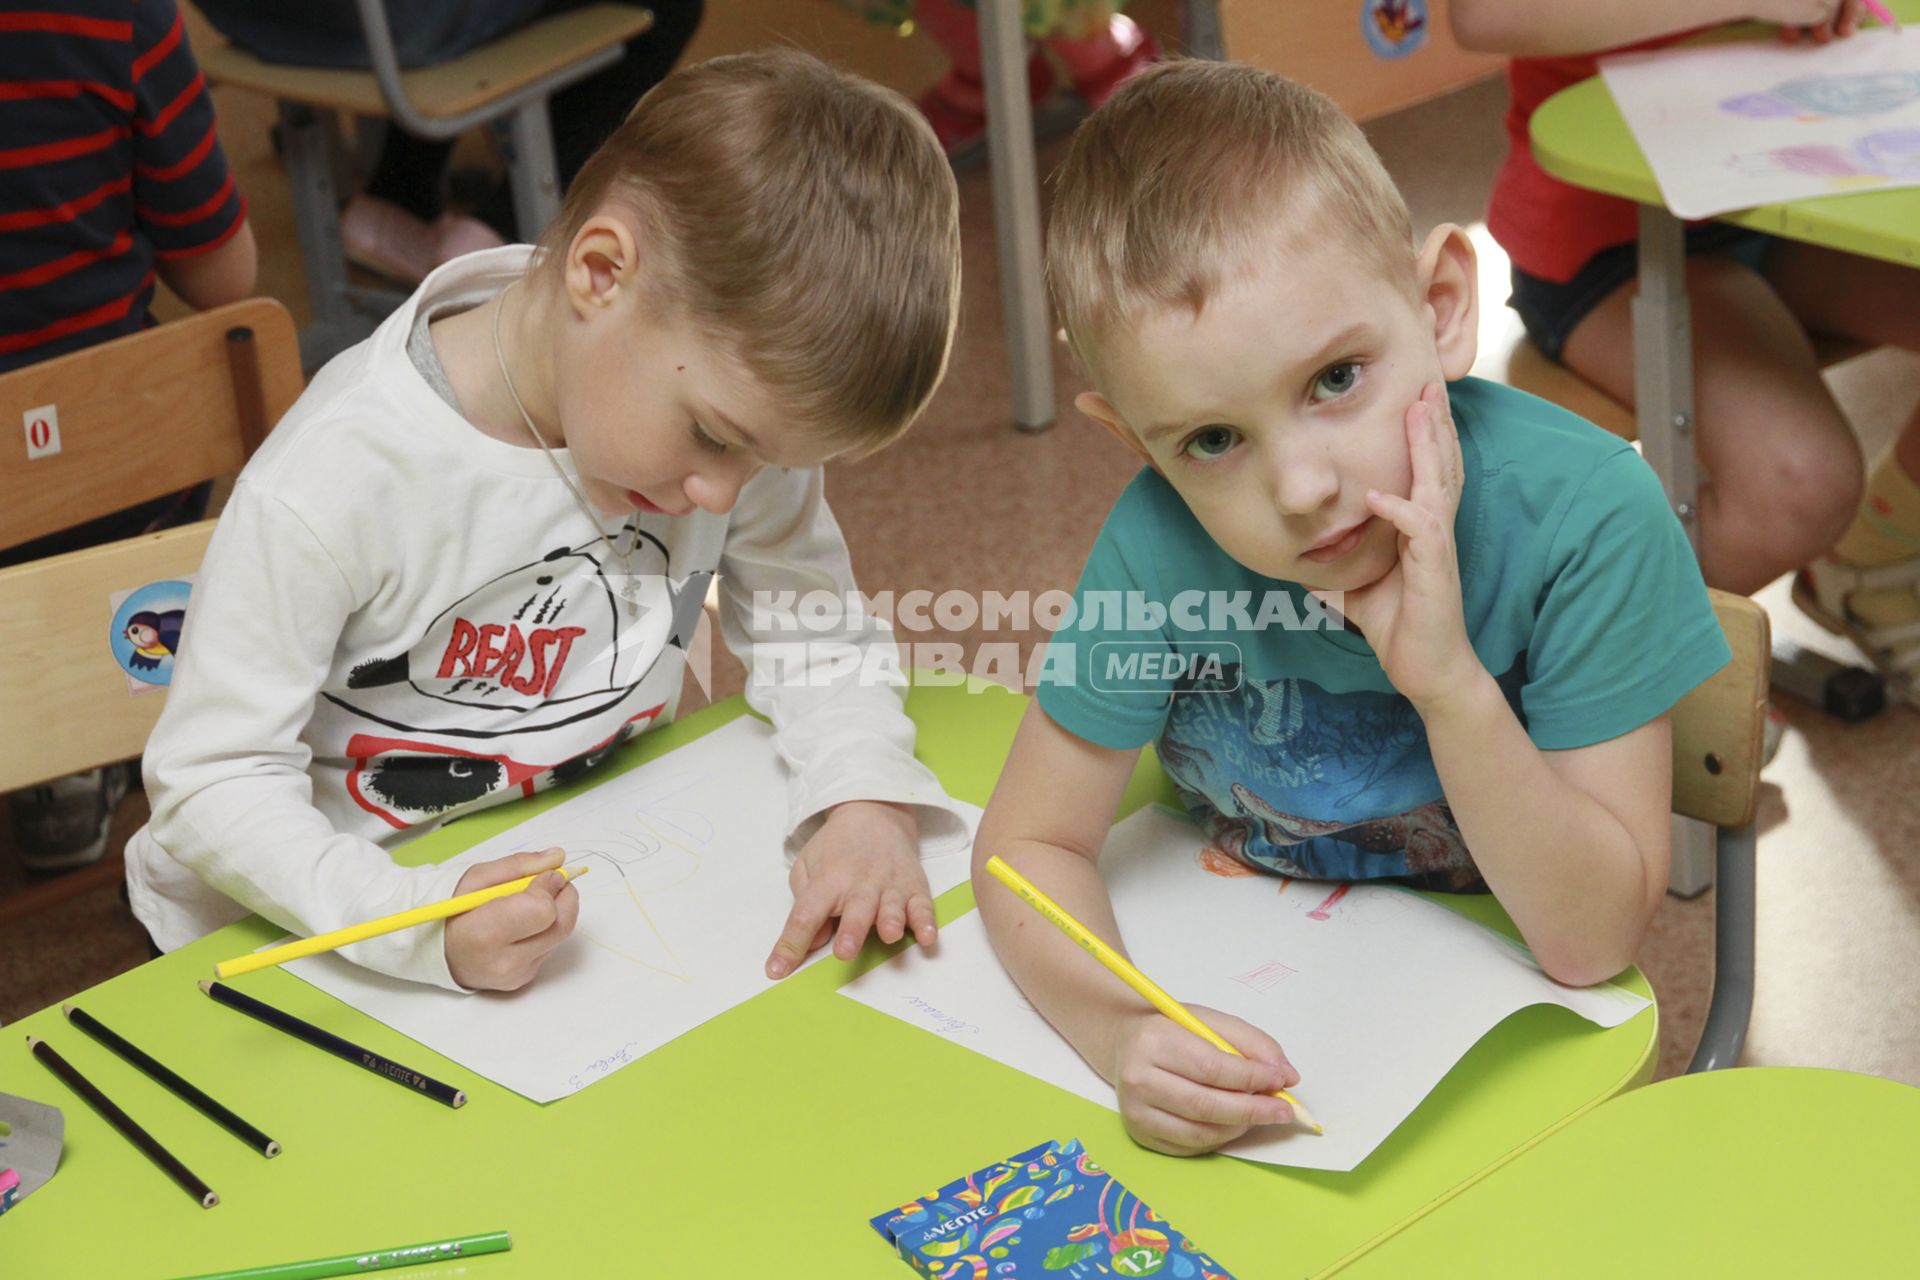 Барнаул. Дети рисуют на занятиях  в детском саду.